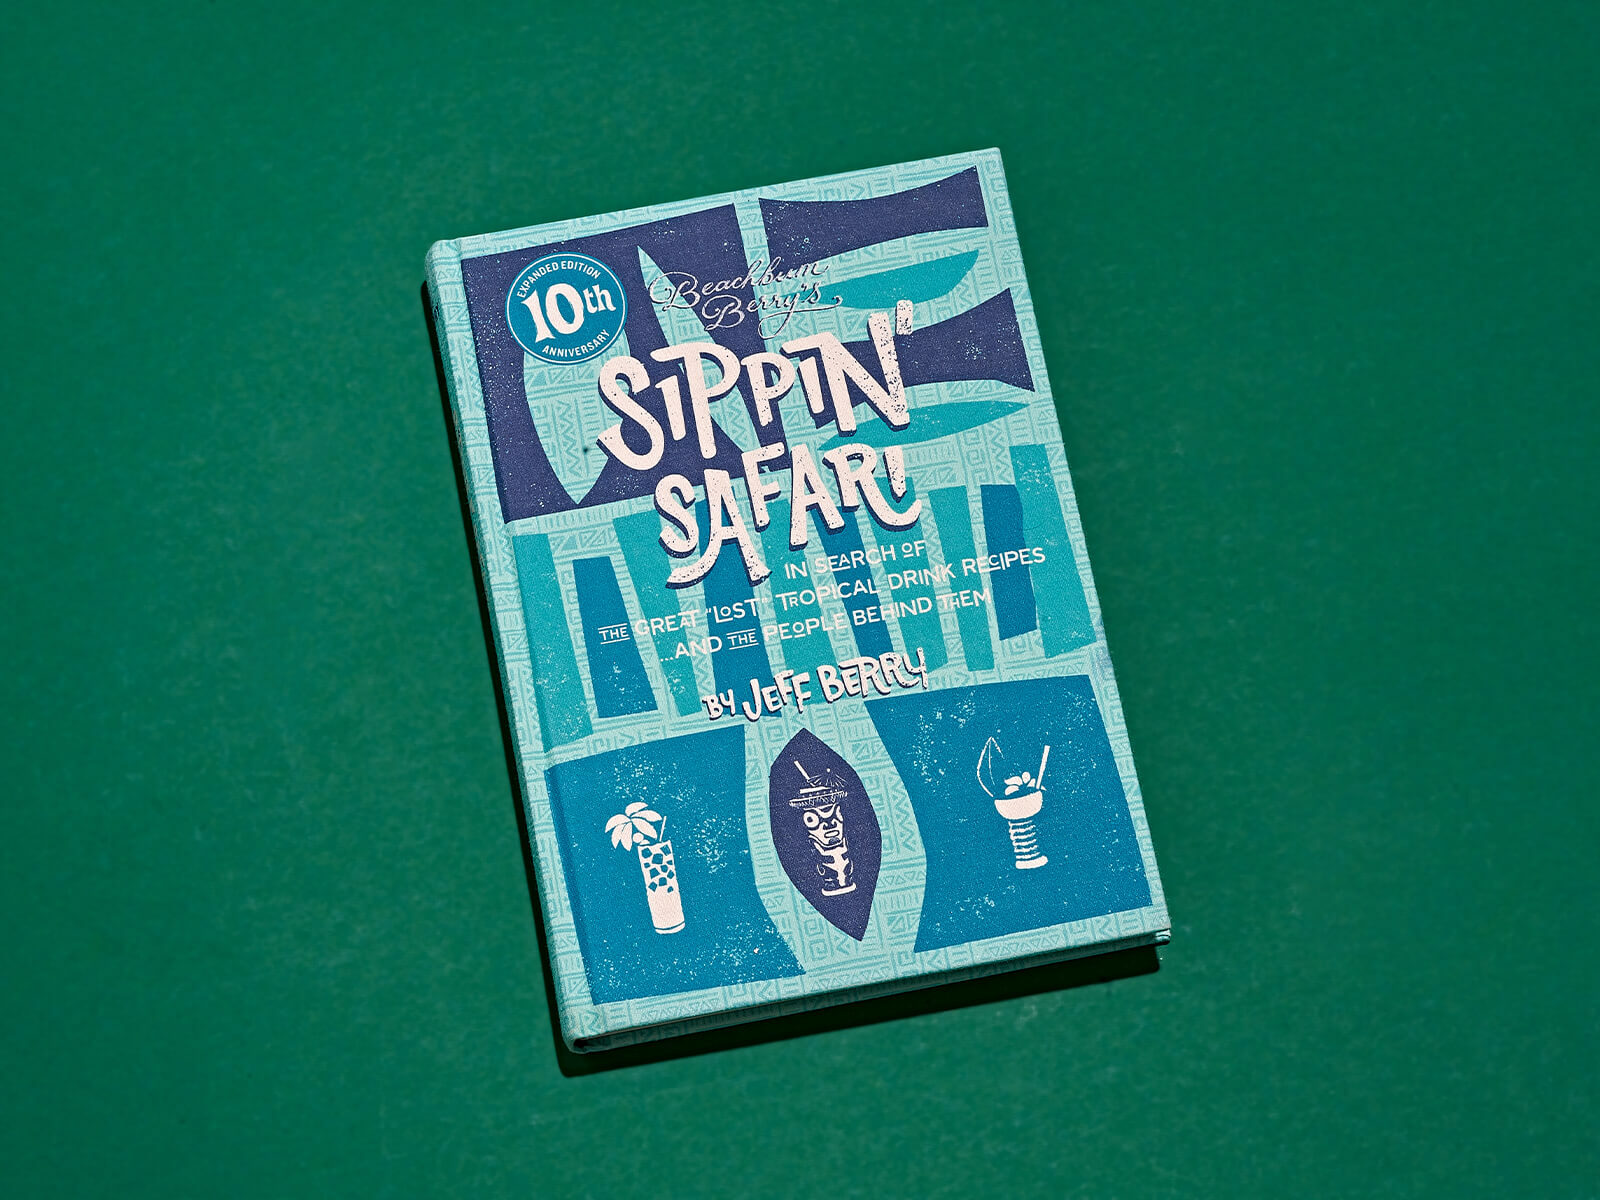 Auf dem Bild ist das Buch Sippin-Safari-von-Jeff-Berry-Cocktail-Buch-ueber-Tiki-Drinks zu sehen.